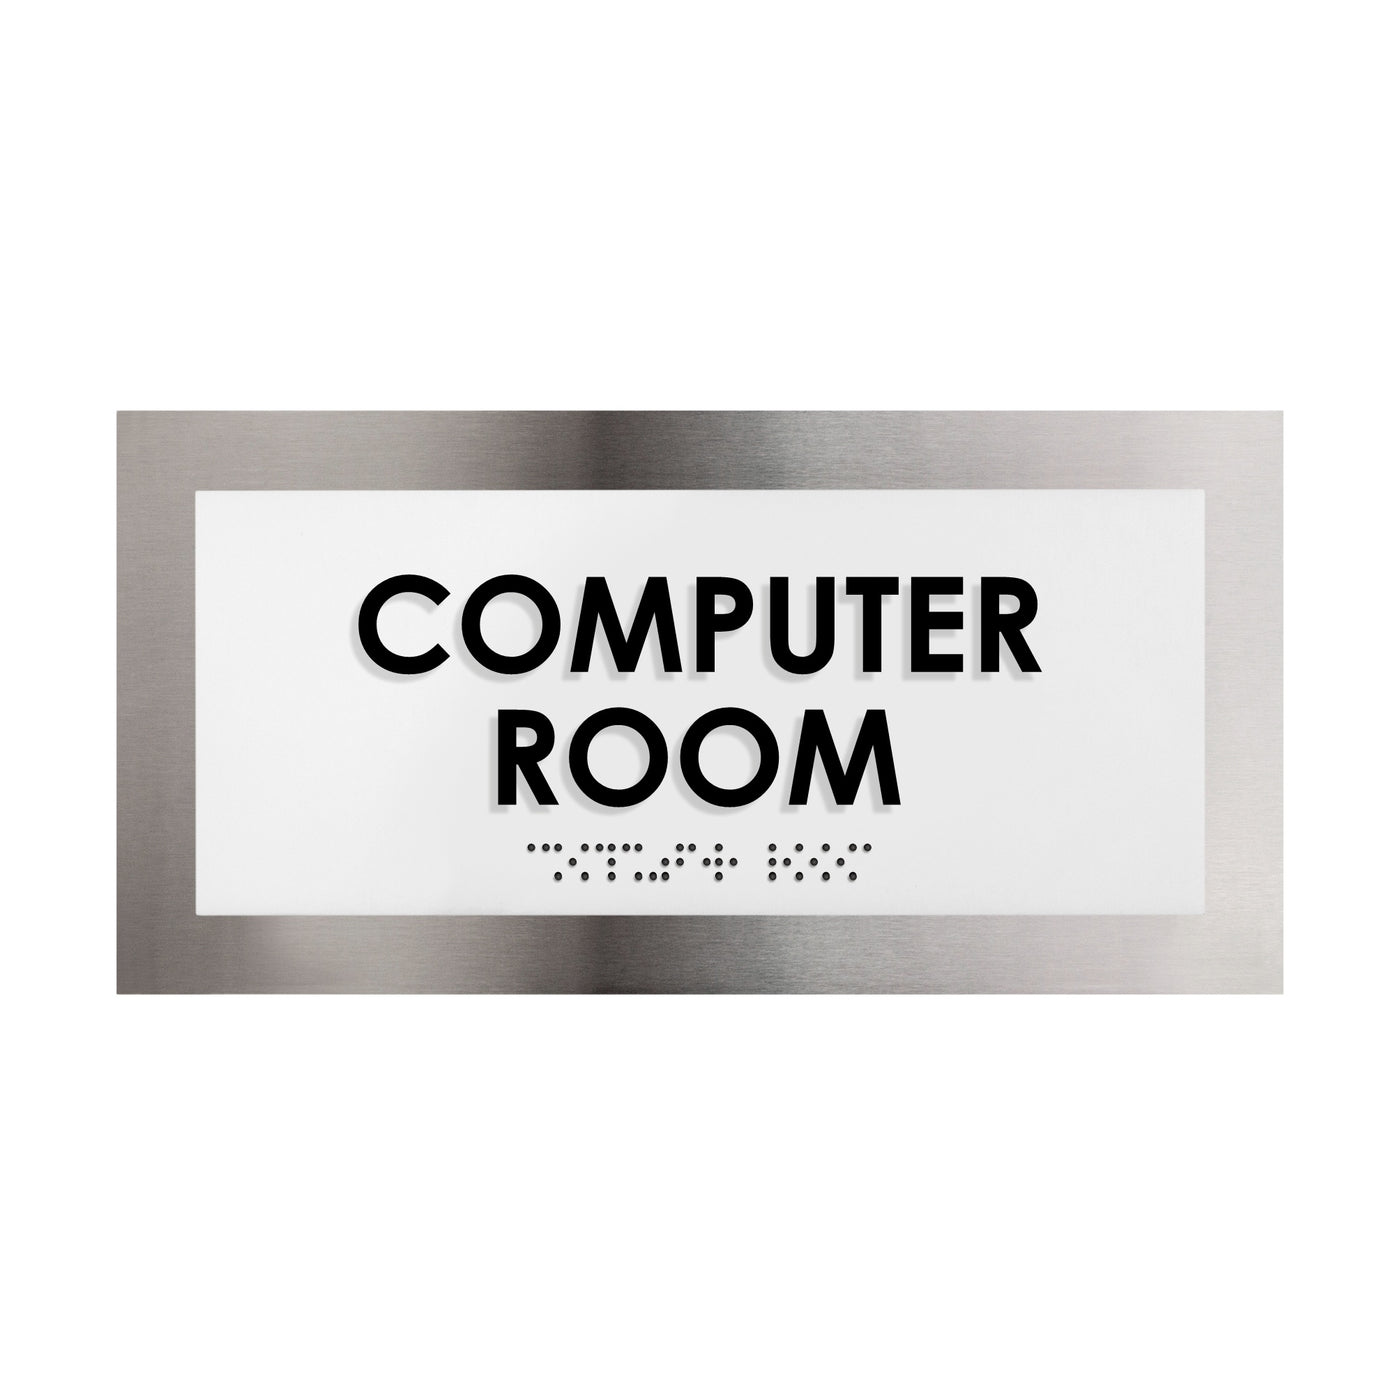 Computer Room Door Plate - Stainless Steel Sign - "Modern" Design